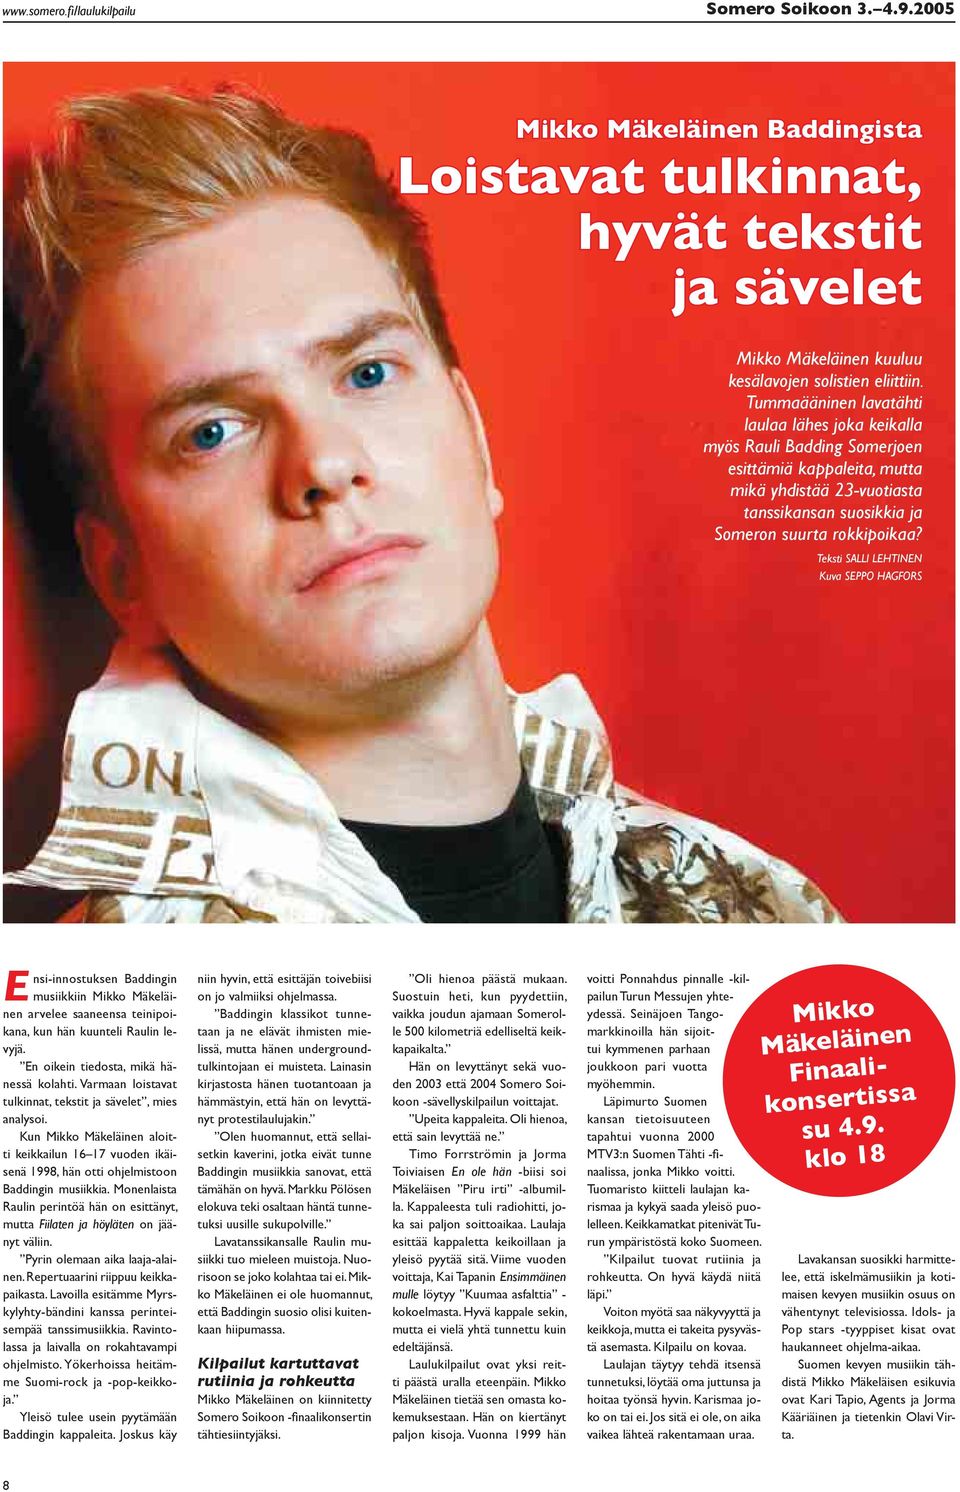 Teksti SALLI LEHTINEN Kuva SEPPO HAGFORS nsi-innostuksen Baddingin musiikkiin Mikko Mäkeläi- Enen arvelee saaneensa teinipoikana, kun hän kuunteli Raulin levyjä.